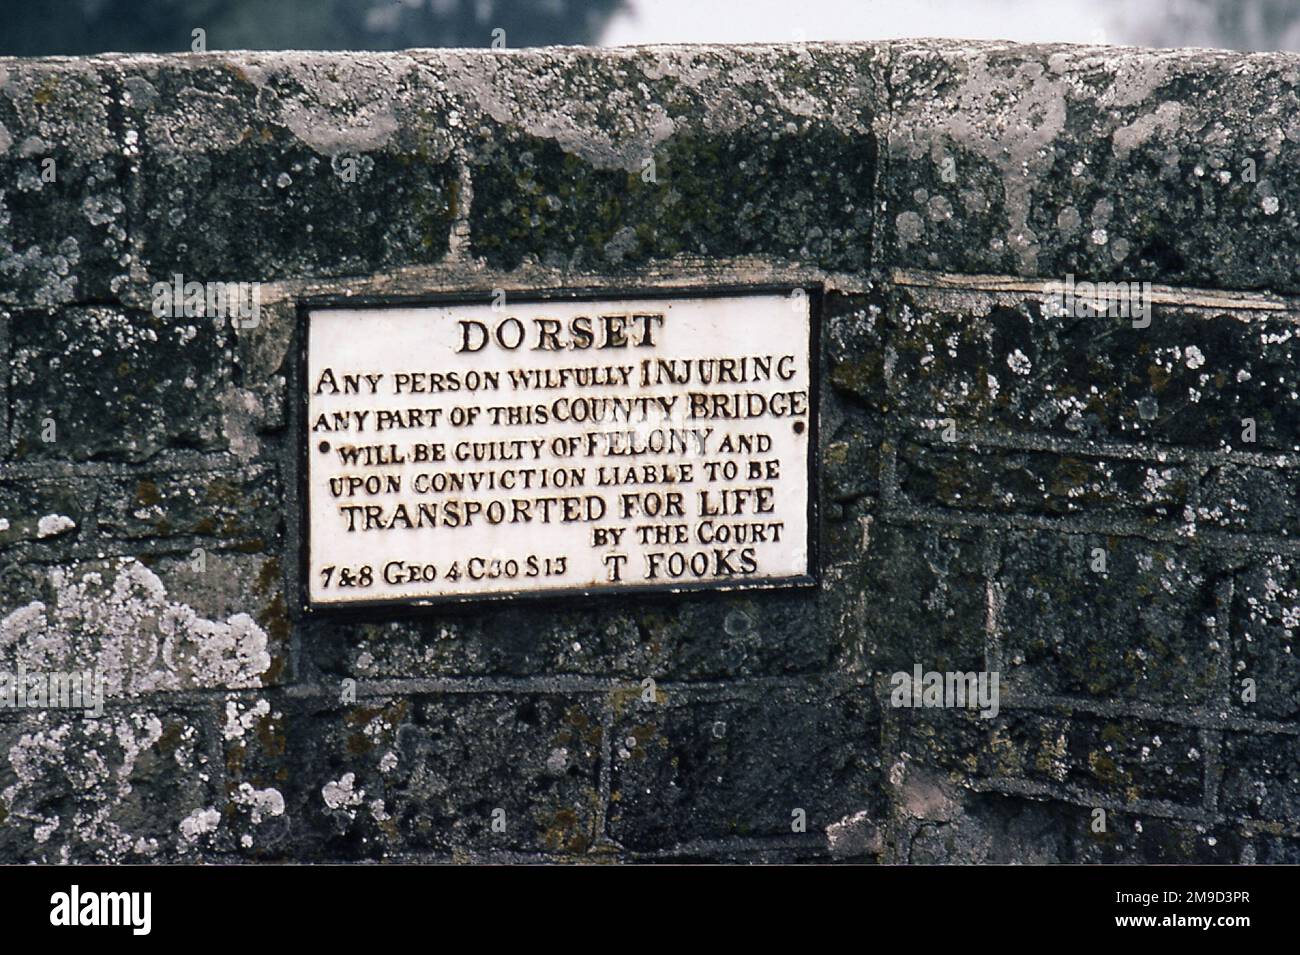 Signez un avertissement de transport à vie comme pénalité pour dommages criminels, datant du règne du roi George IV d'Angleterre, 1820-1830, sur un pont près de Sturminster Newton, Dorset, Angleterre. Banque D'Images